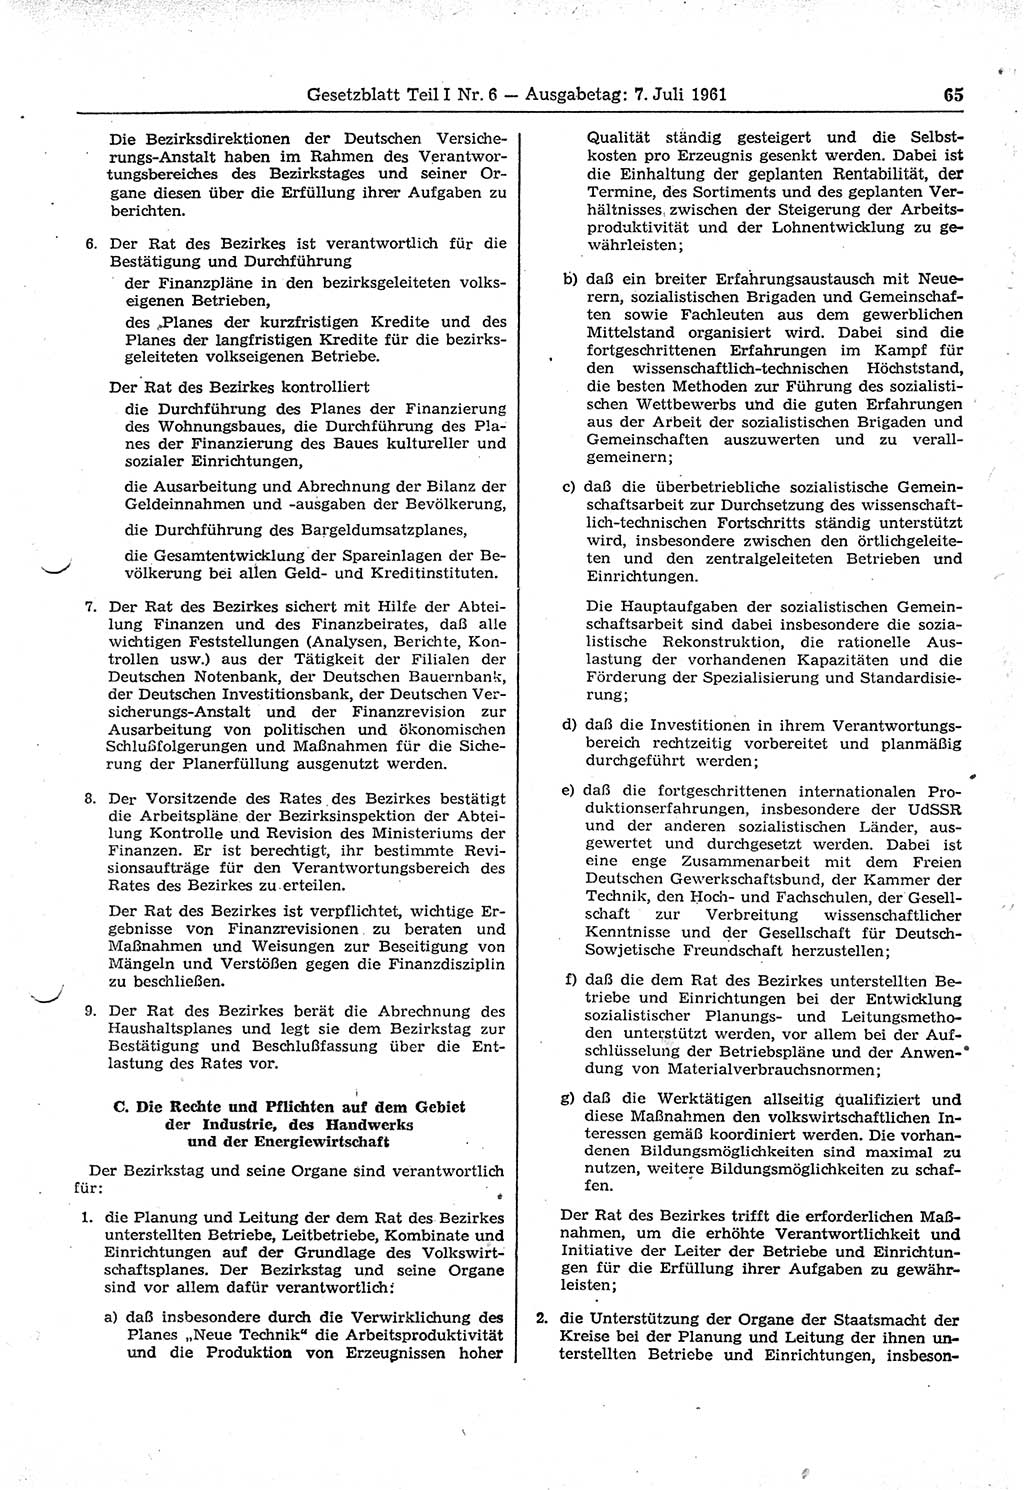 Gesetzblatt (GBl.) der Deutschen Demokratischen Republik (DDR) Teil Ⅰ 1961, Seite 65 (GBl. DDR Ⅰ 1961, S. 65)